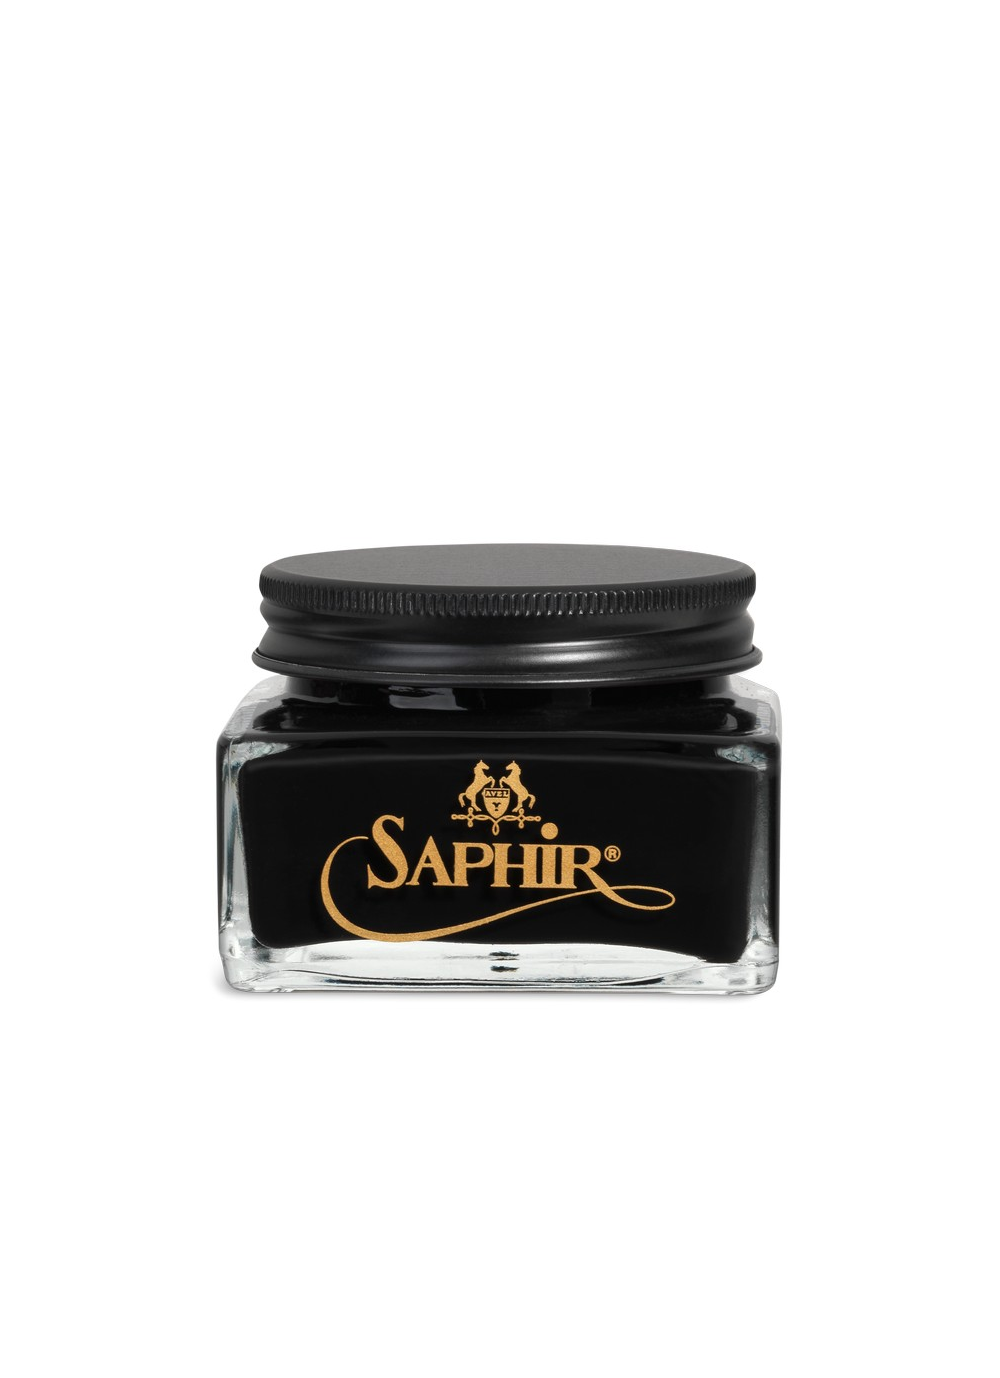 Saphir creme de luxe Med. 